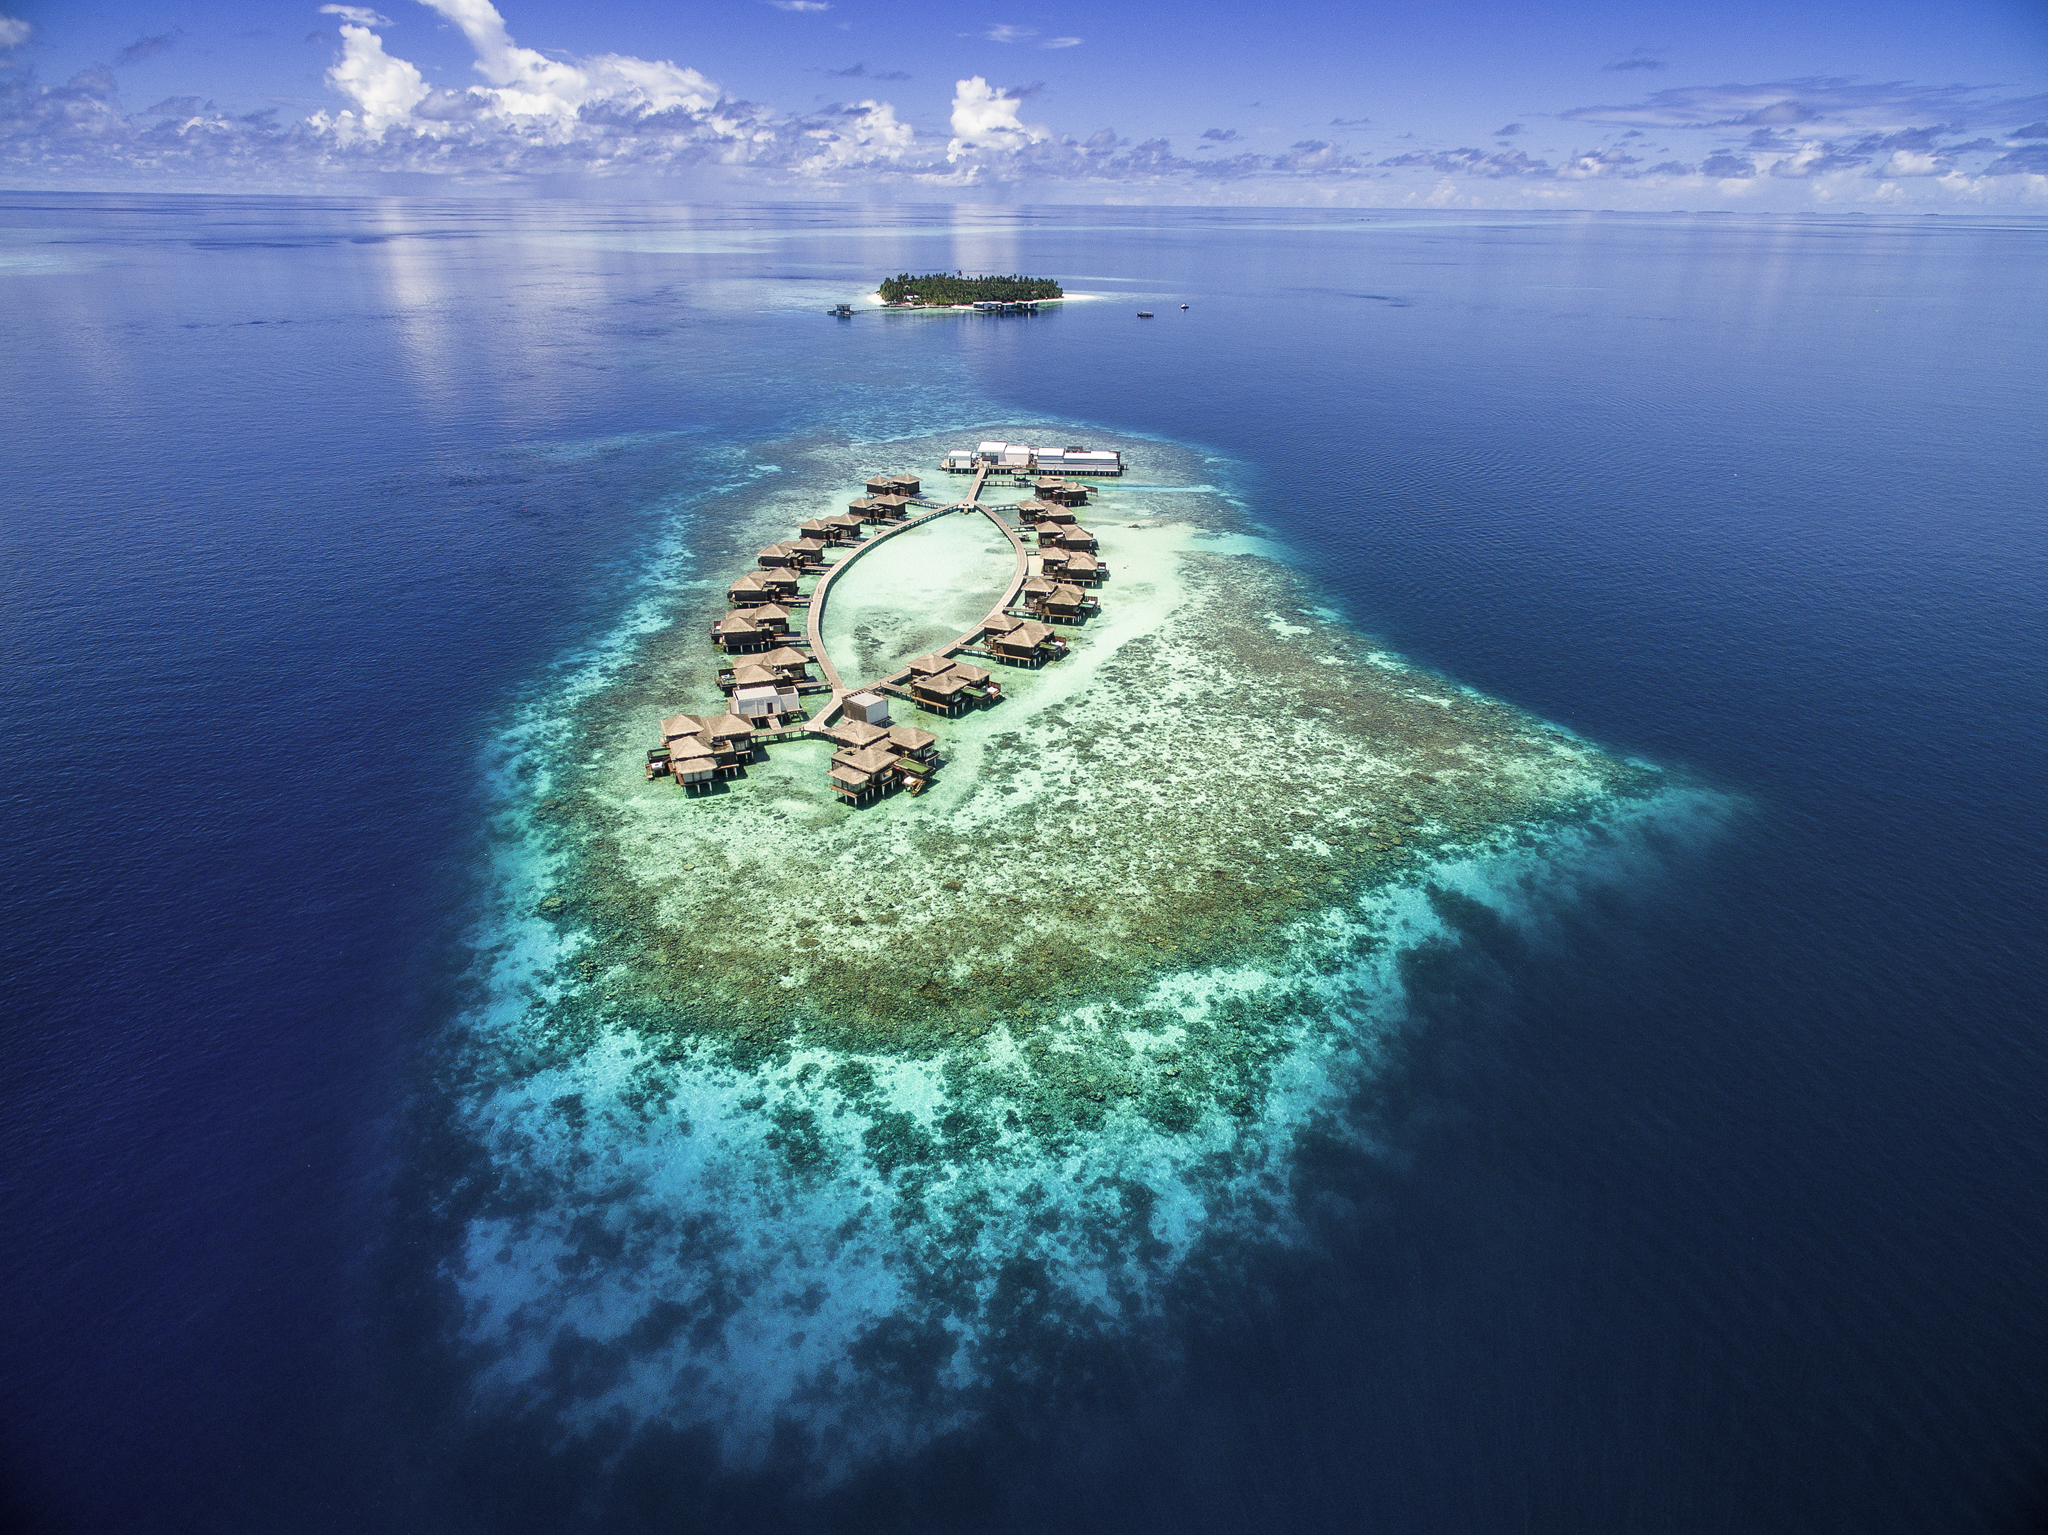 Королевская вилла, морские дворецкие и забота об экологии на роскошном курорте Мальдив (фото 4)